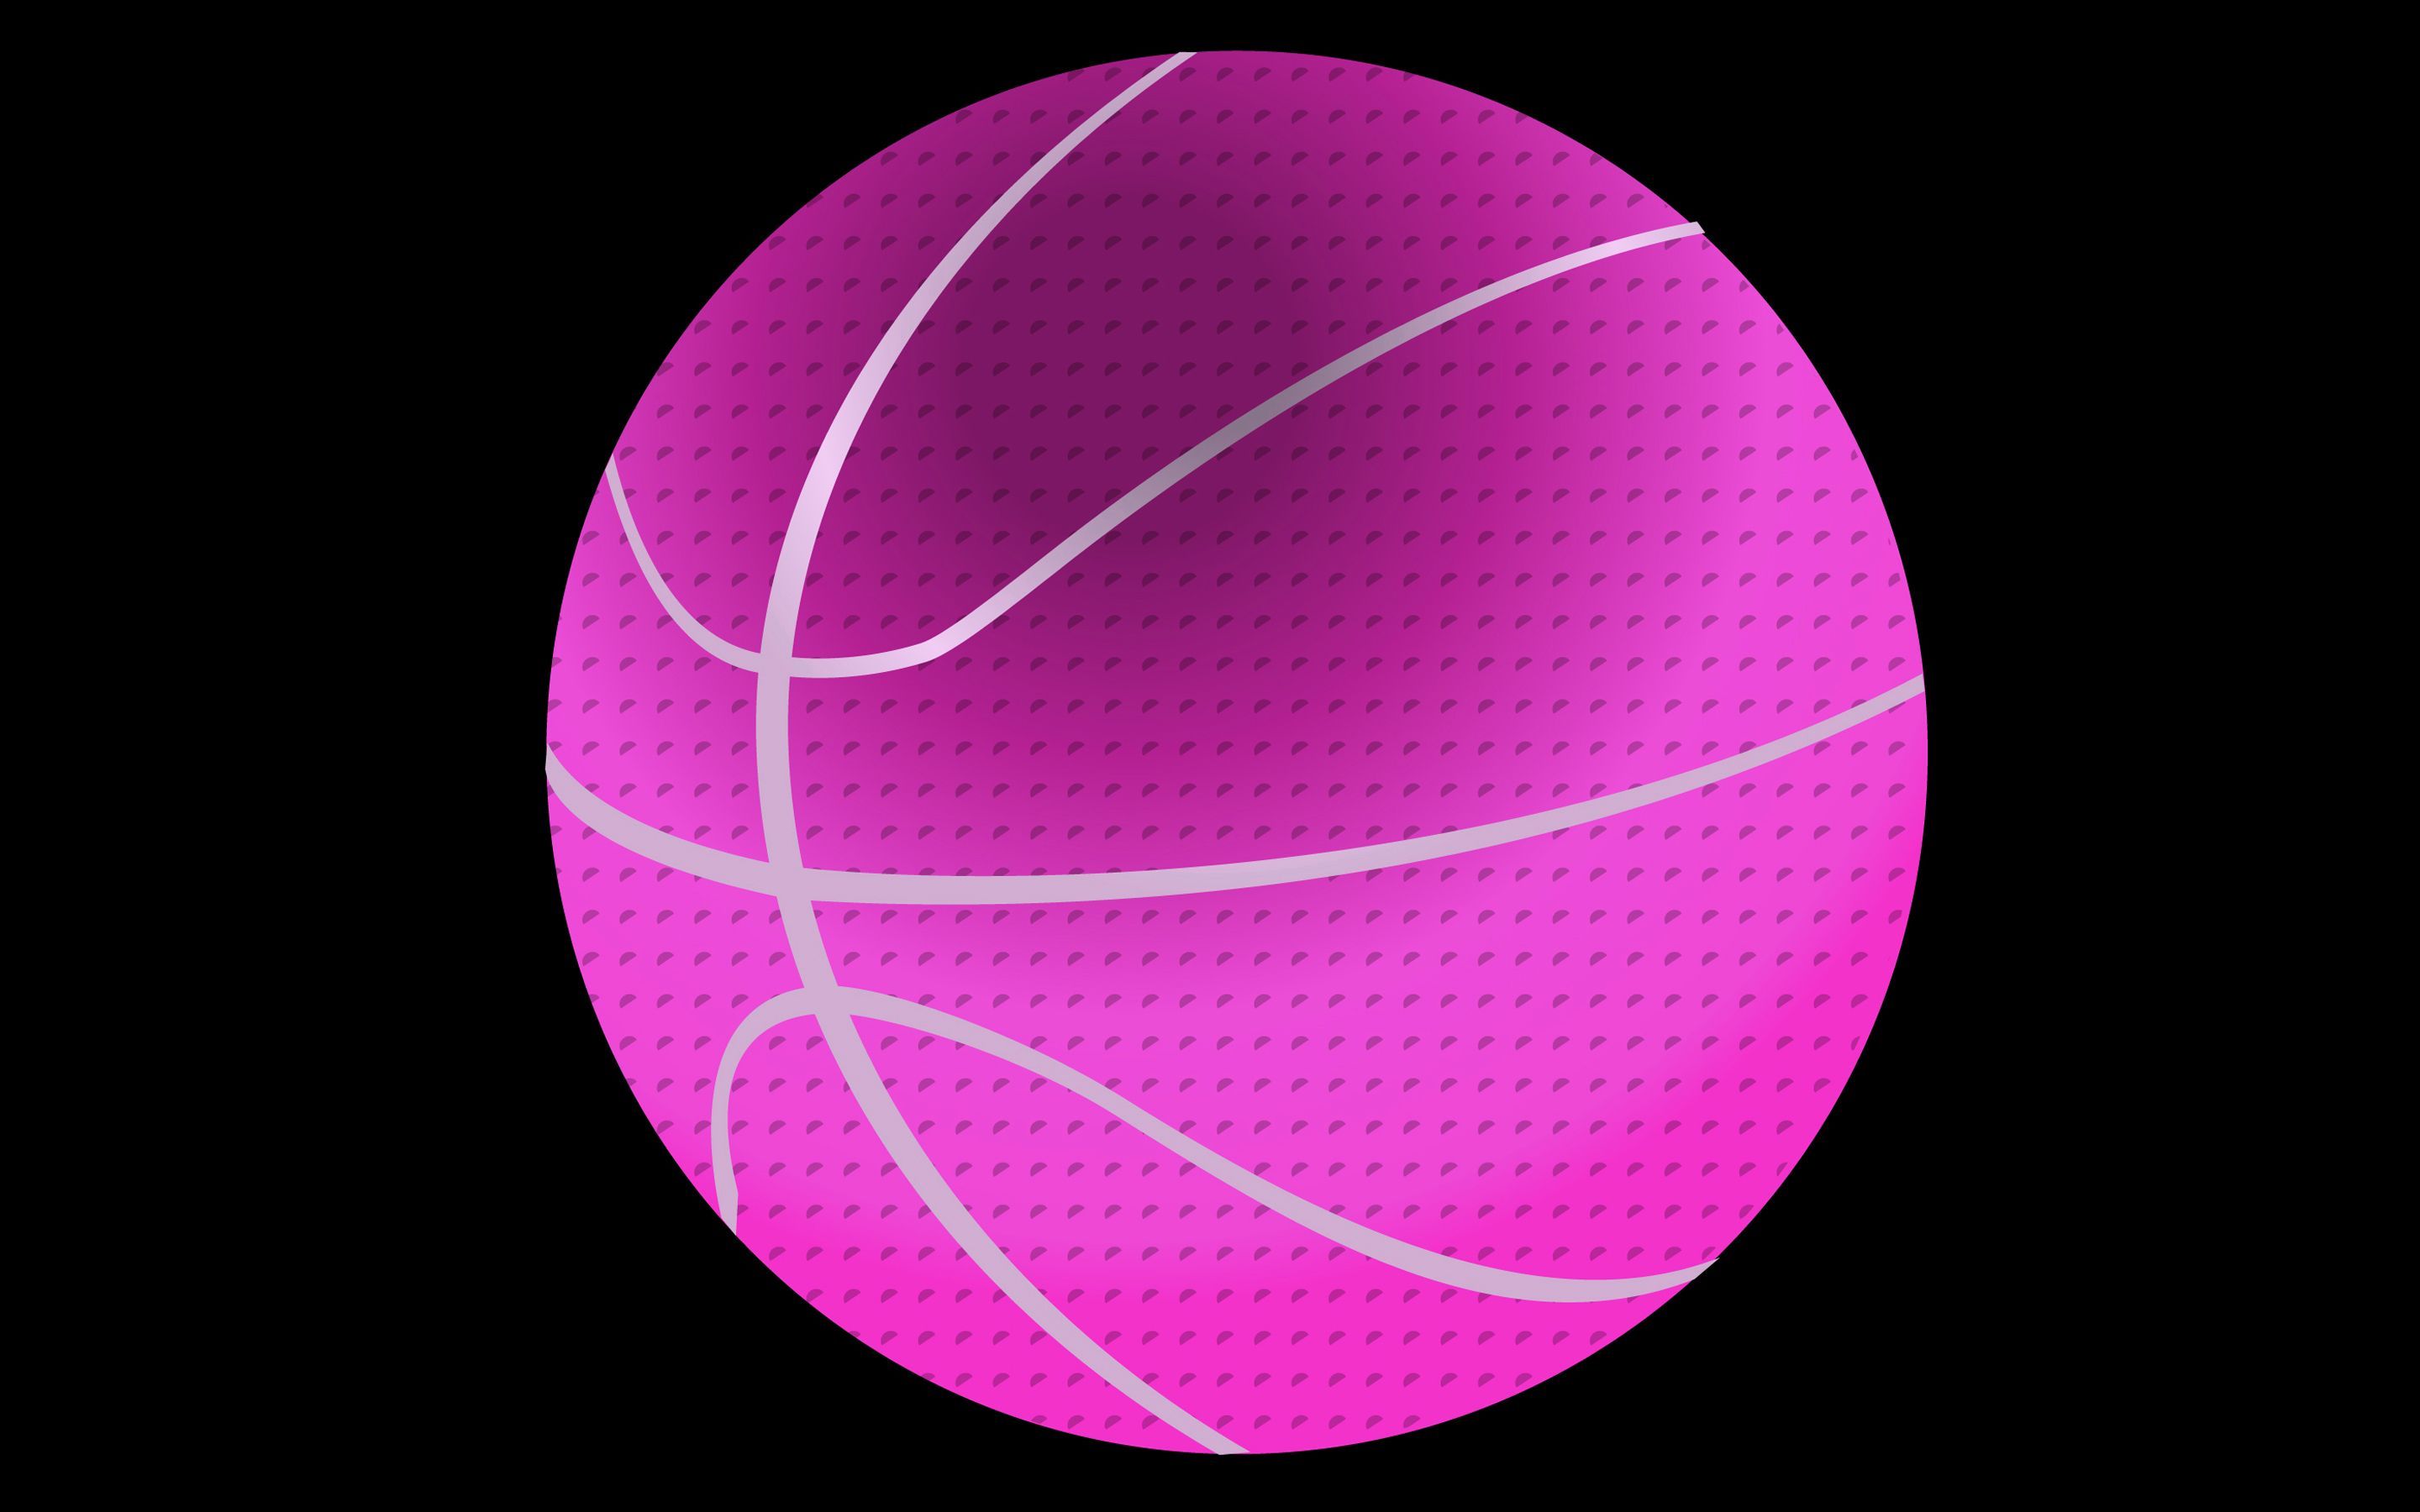 Pink Basketball Wallpaper